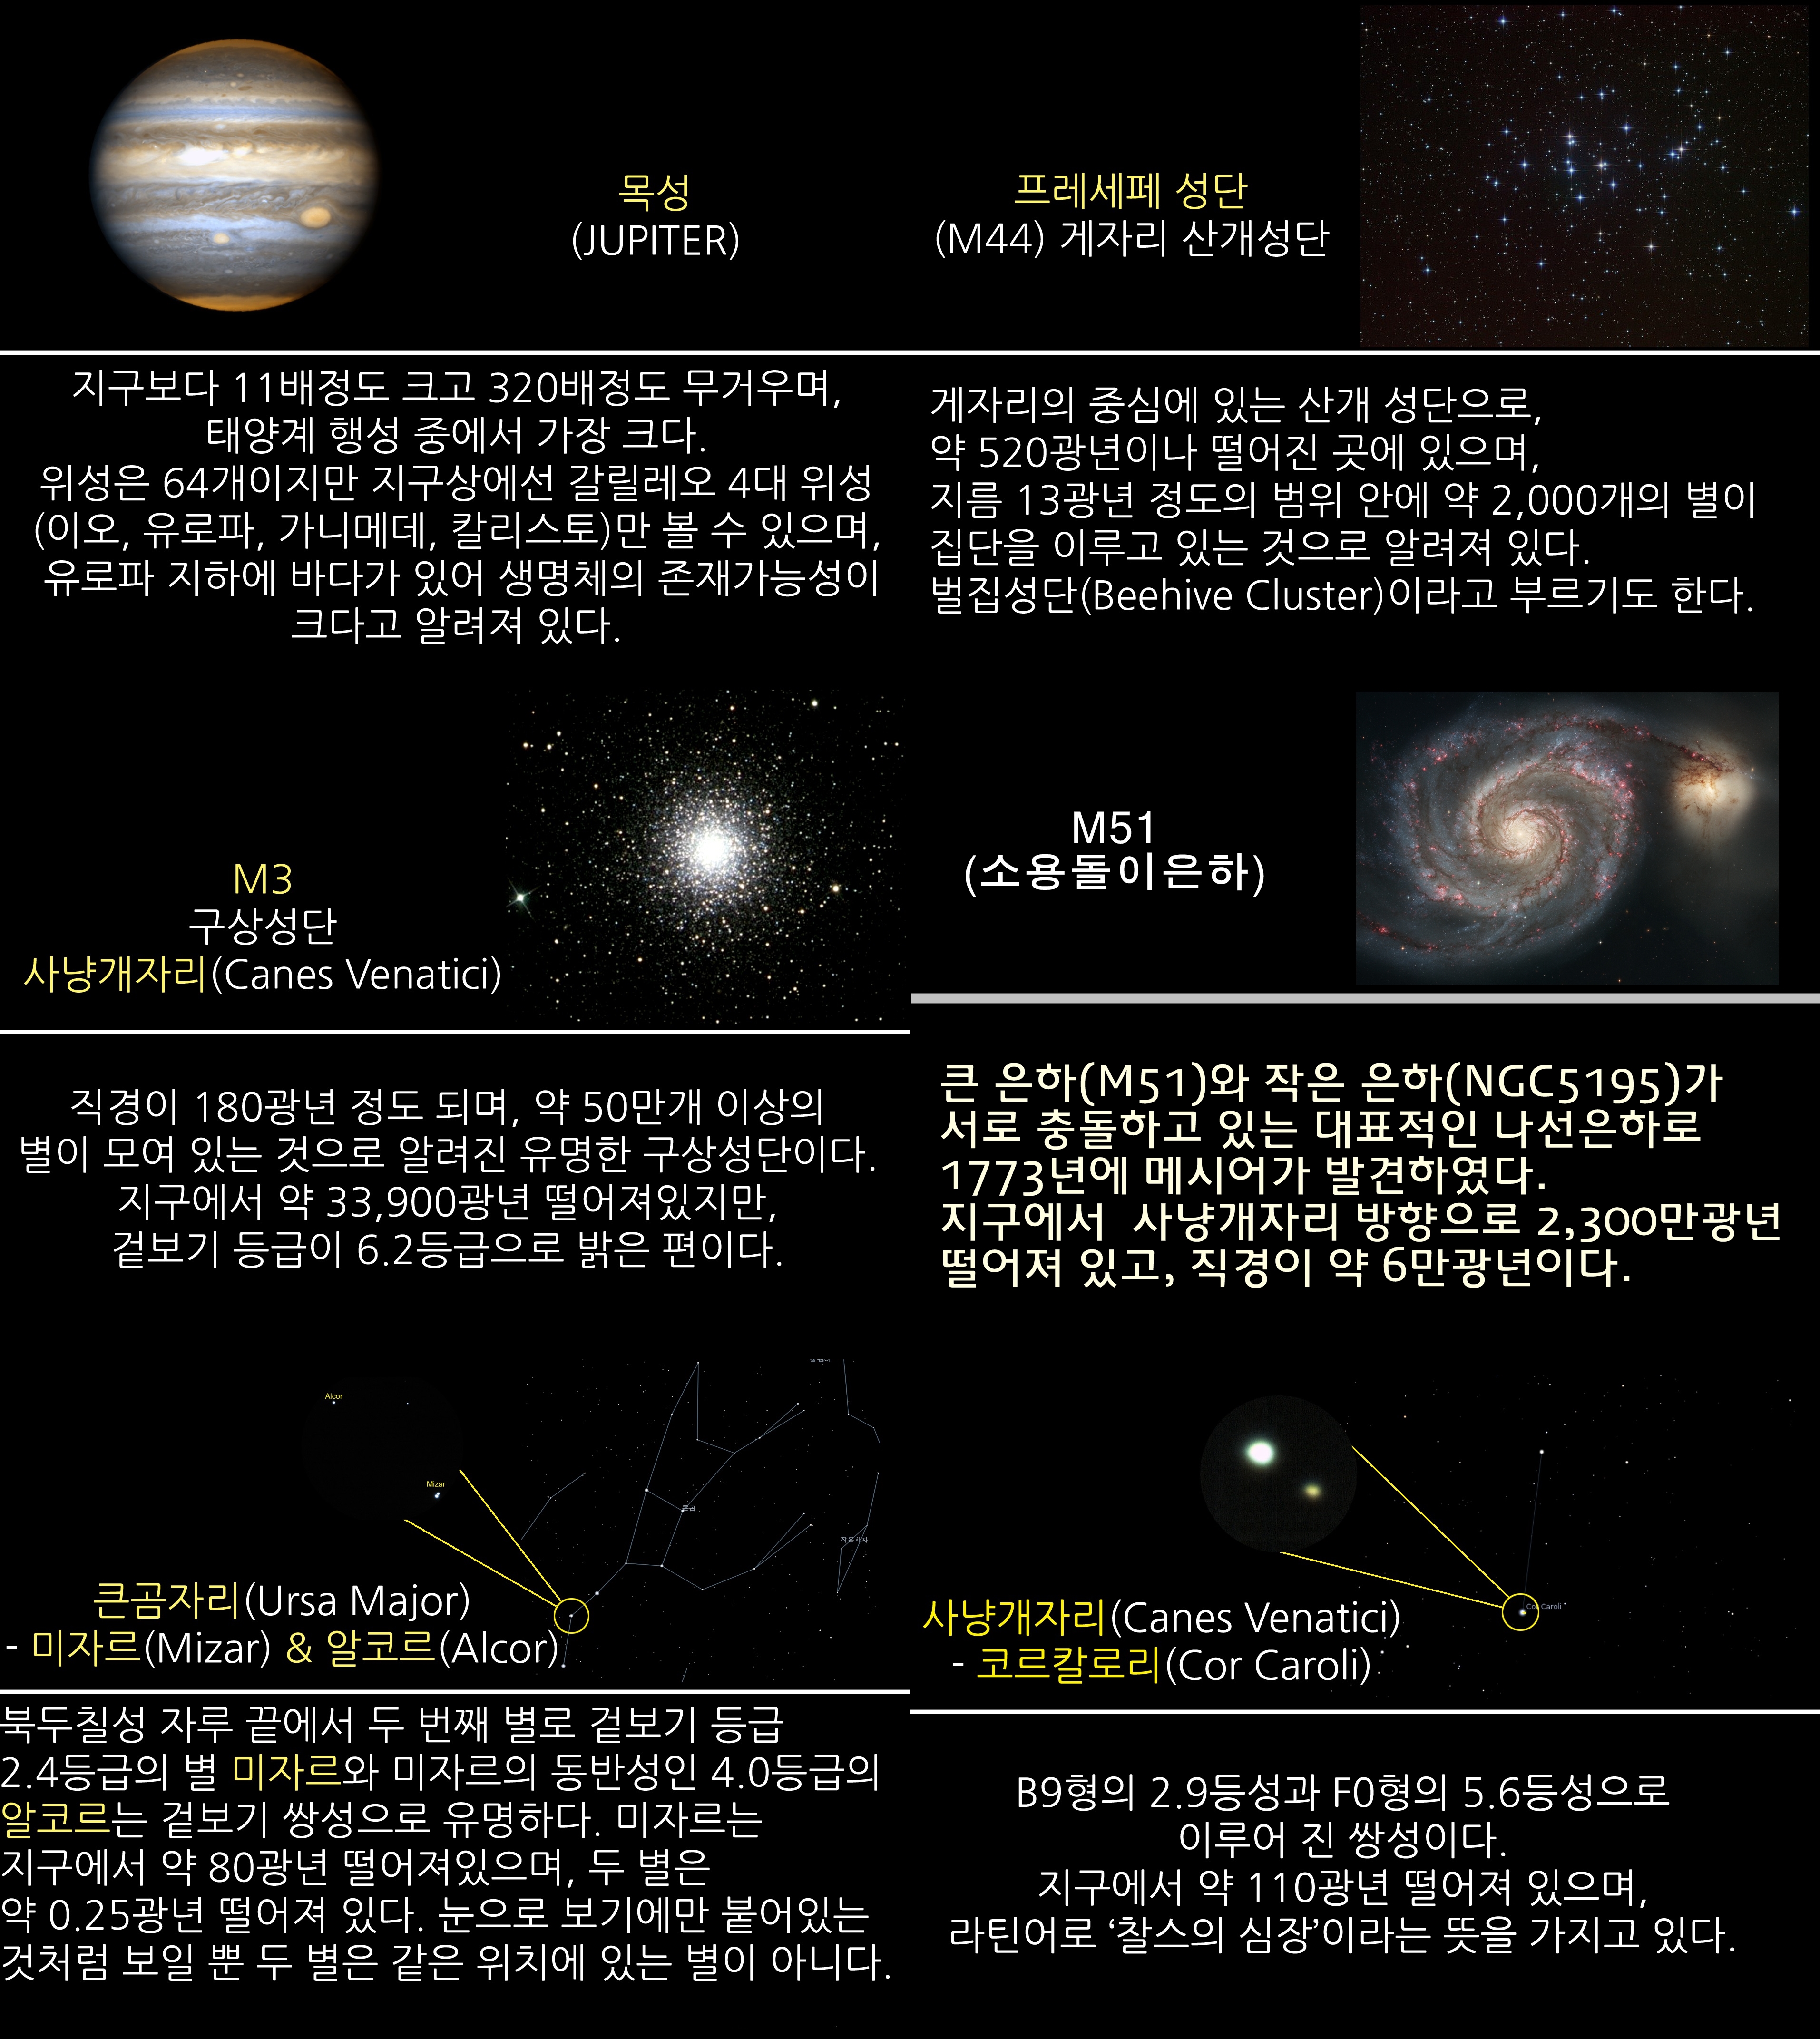 2018년 5월 주요 천체관측 대상